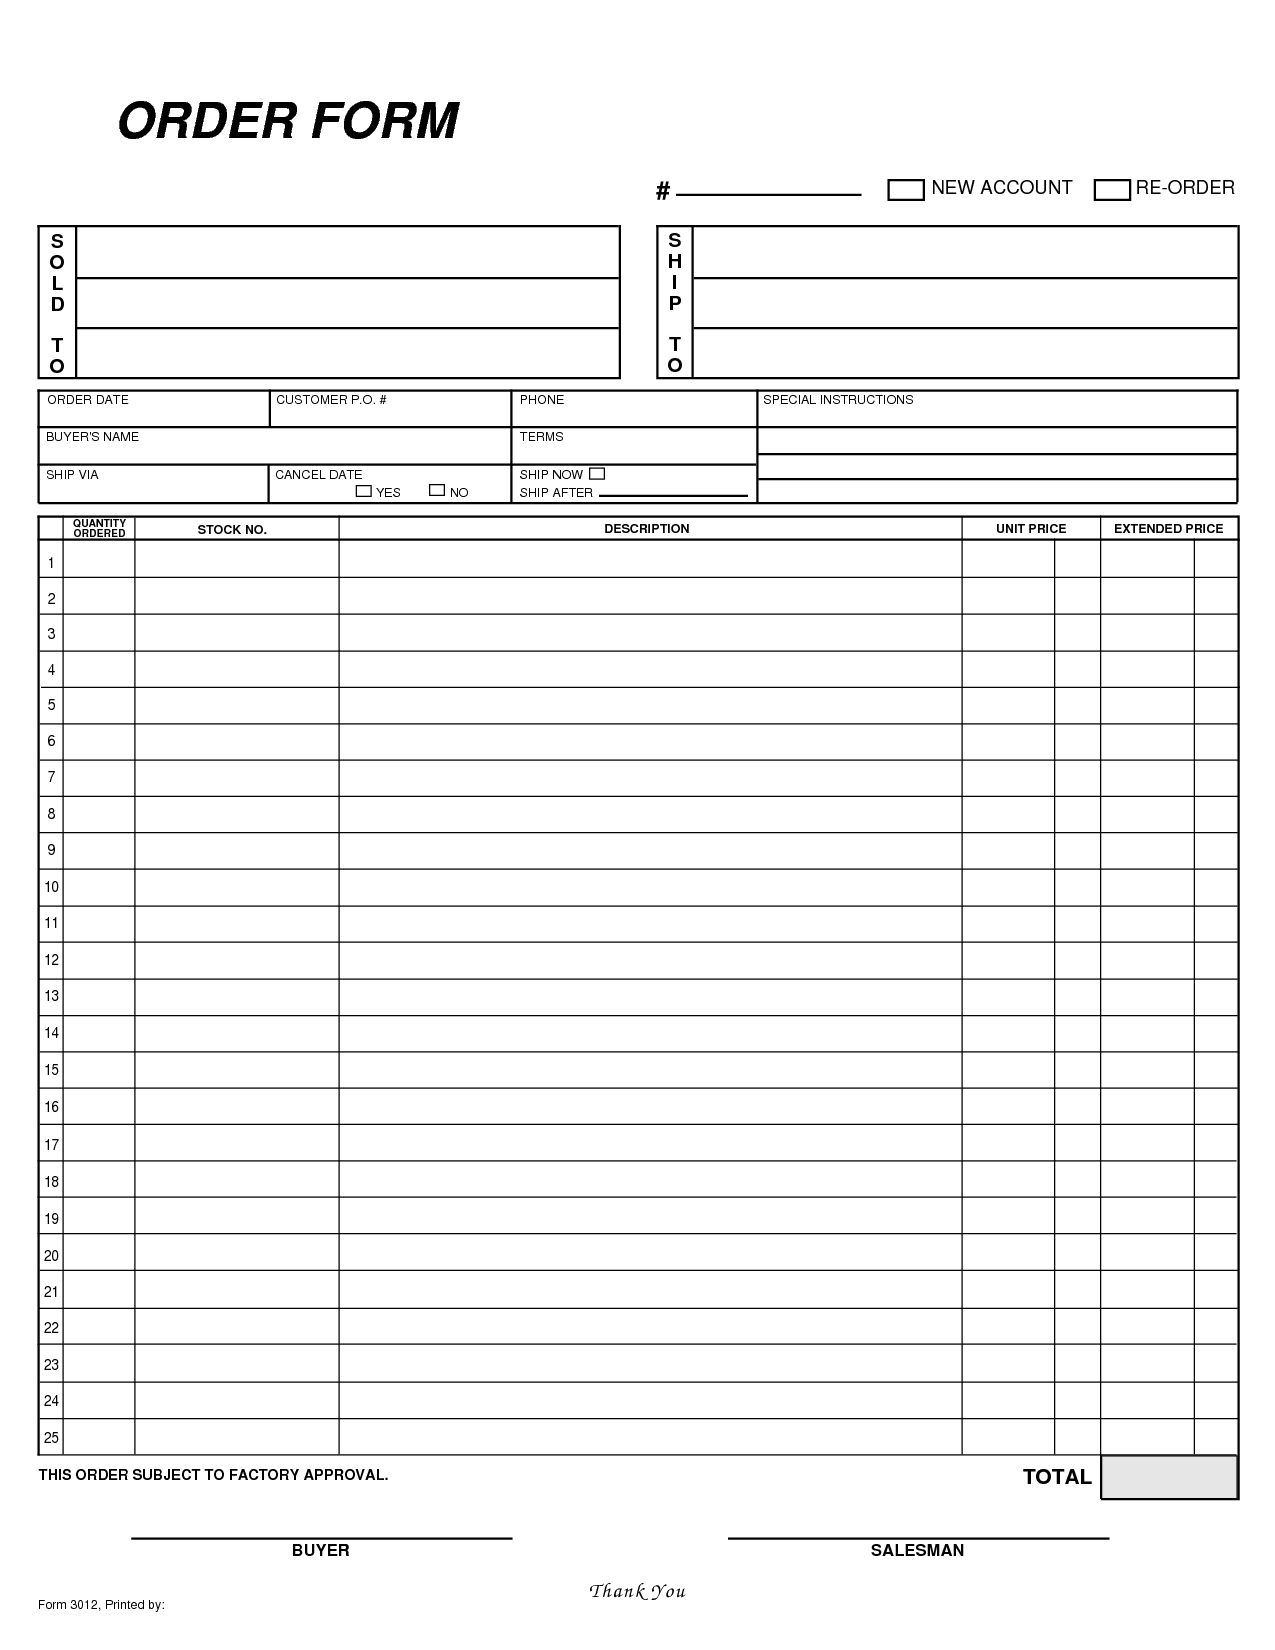 order form sample excel   Tier.brianhenry.co